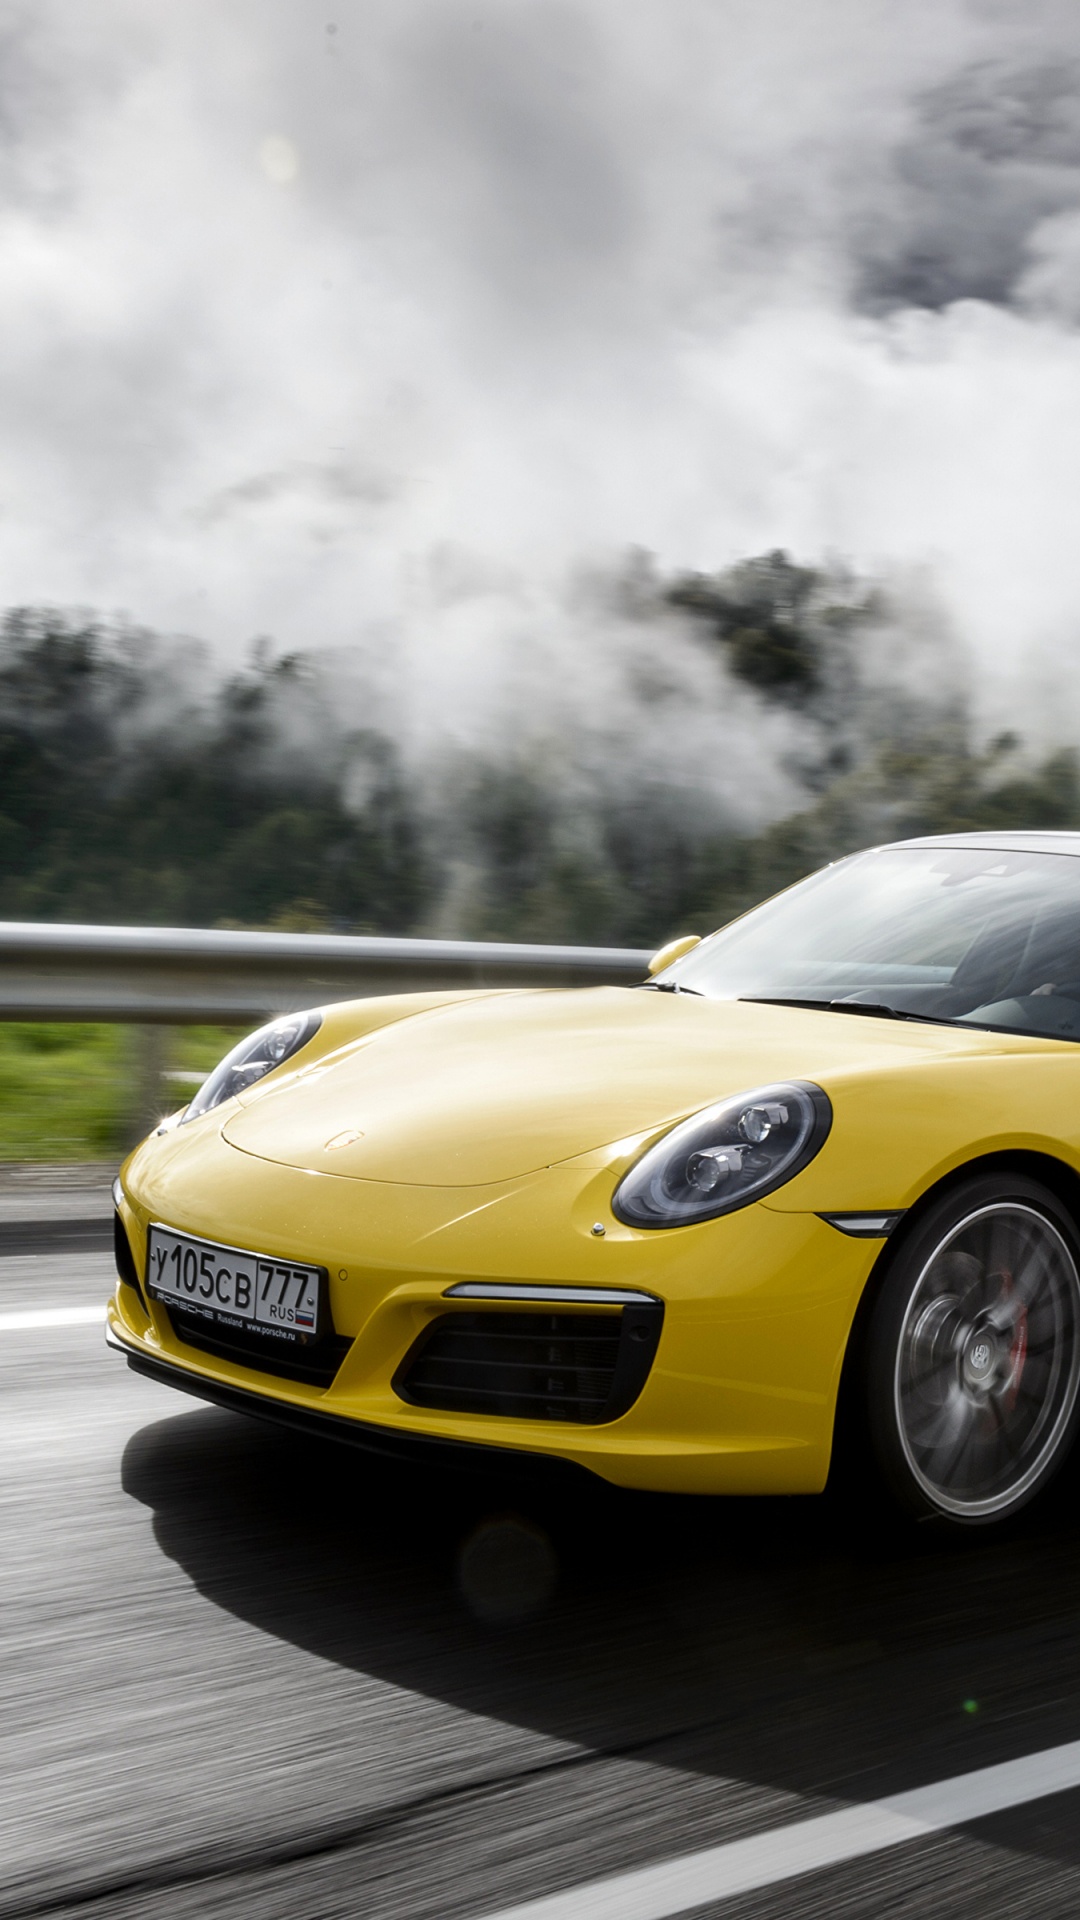 Gelber Porsche 911 Tagsüber Unterwegs. Wallpaper in 1080x1920 Resolution